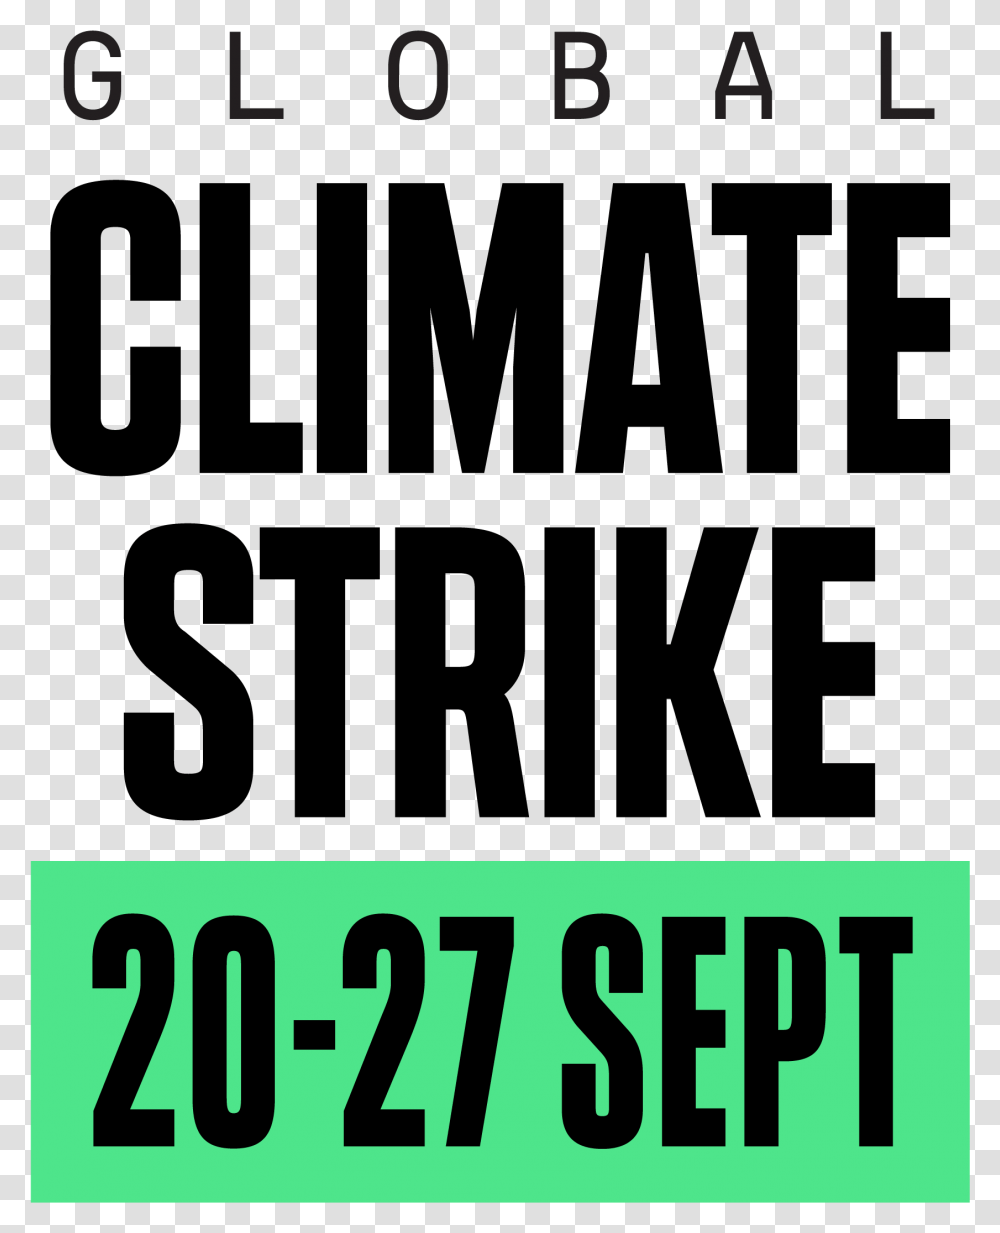 Strike Logo En Color Global Climate Strike 27 September, Trademark, Poster Transparent Png